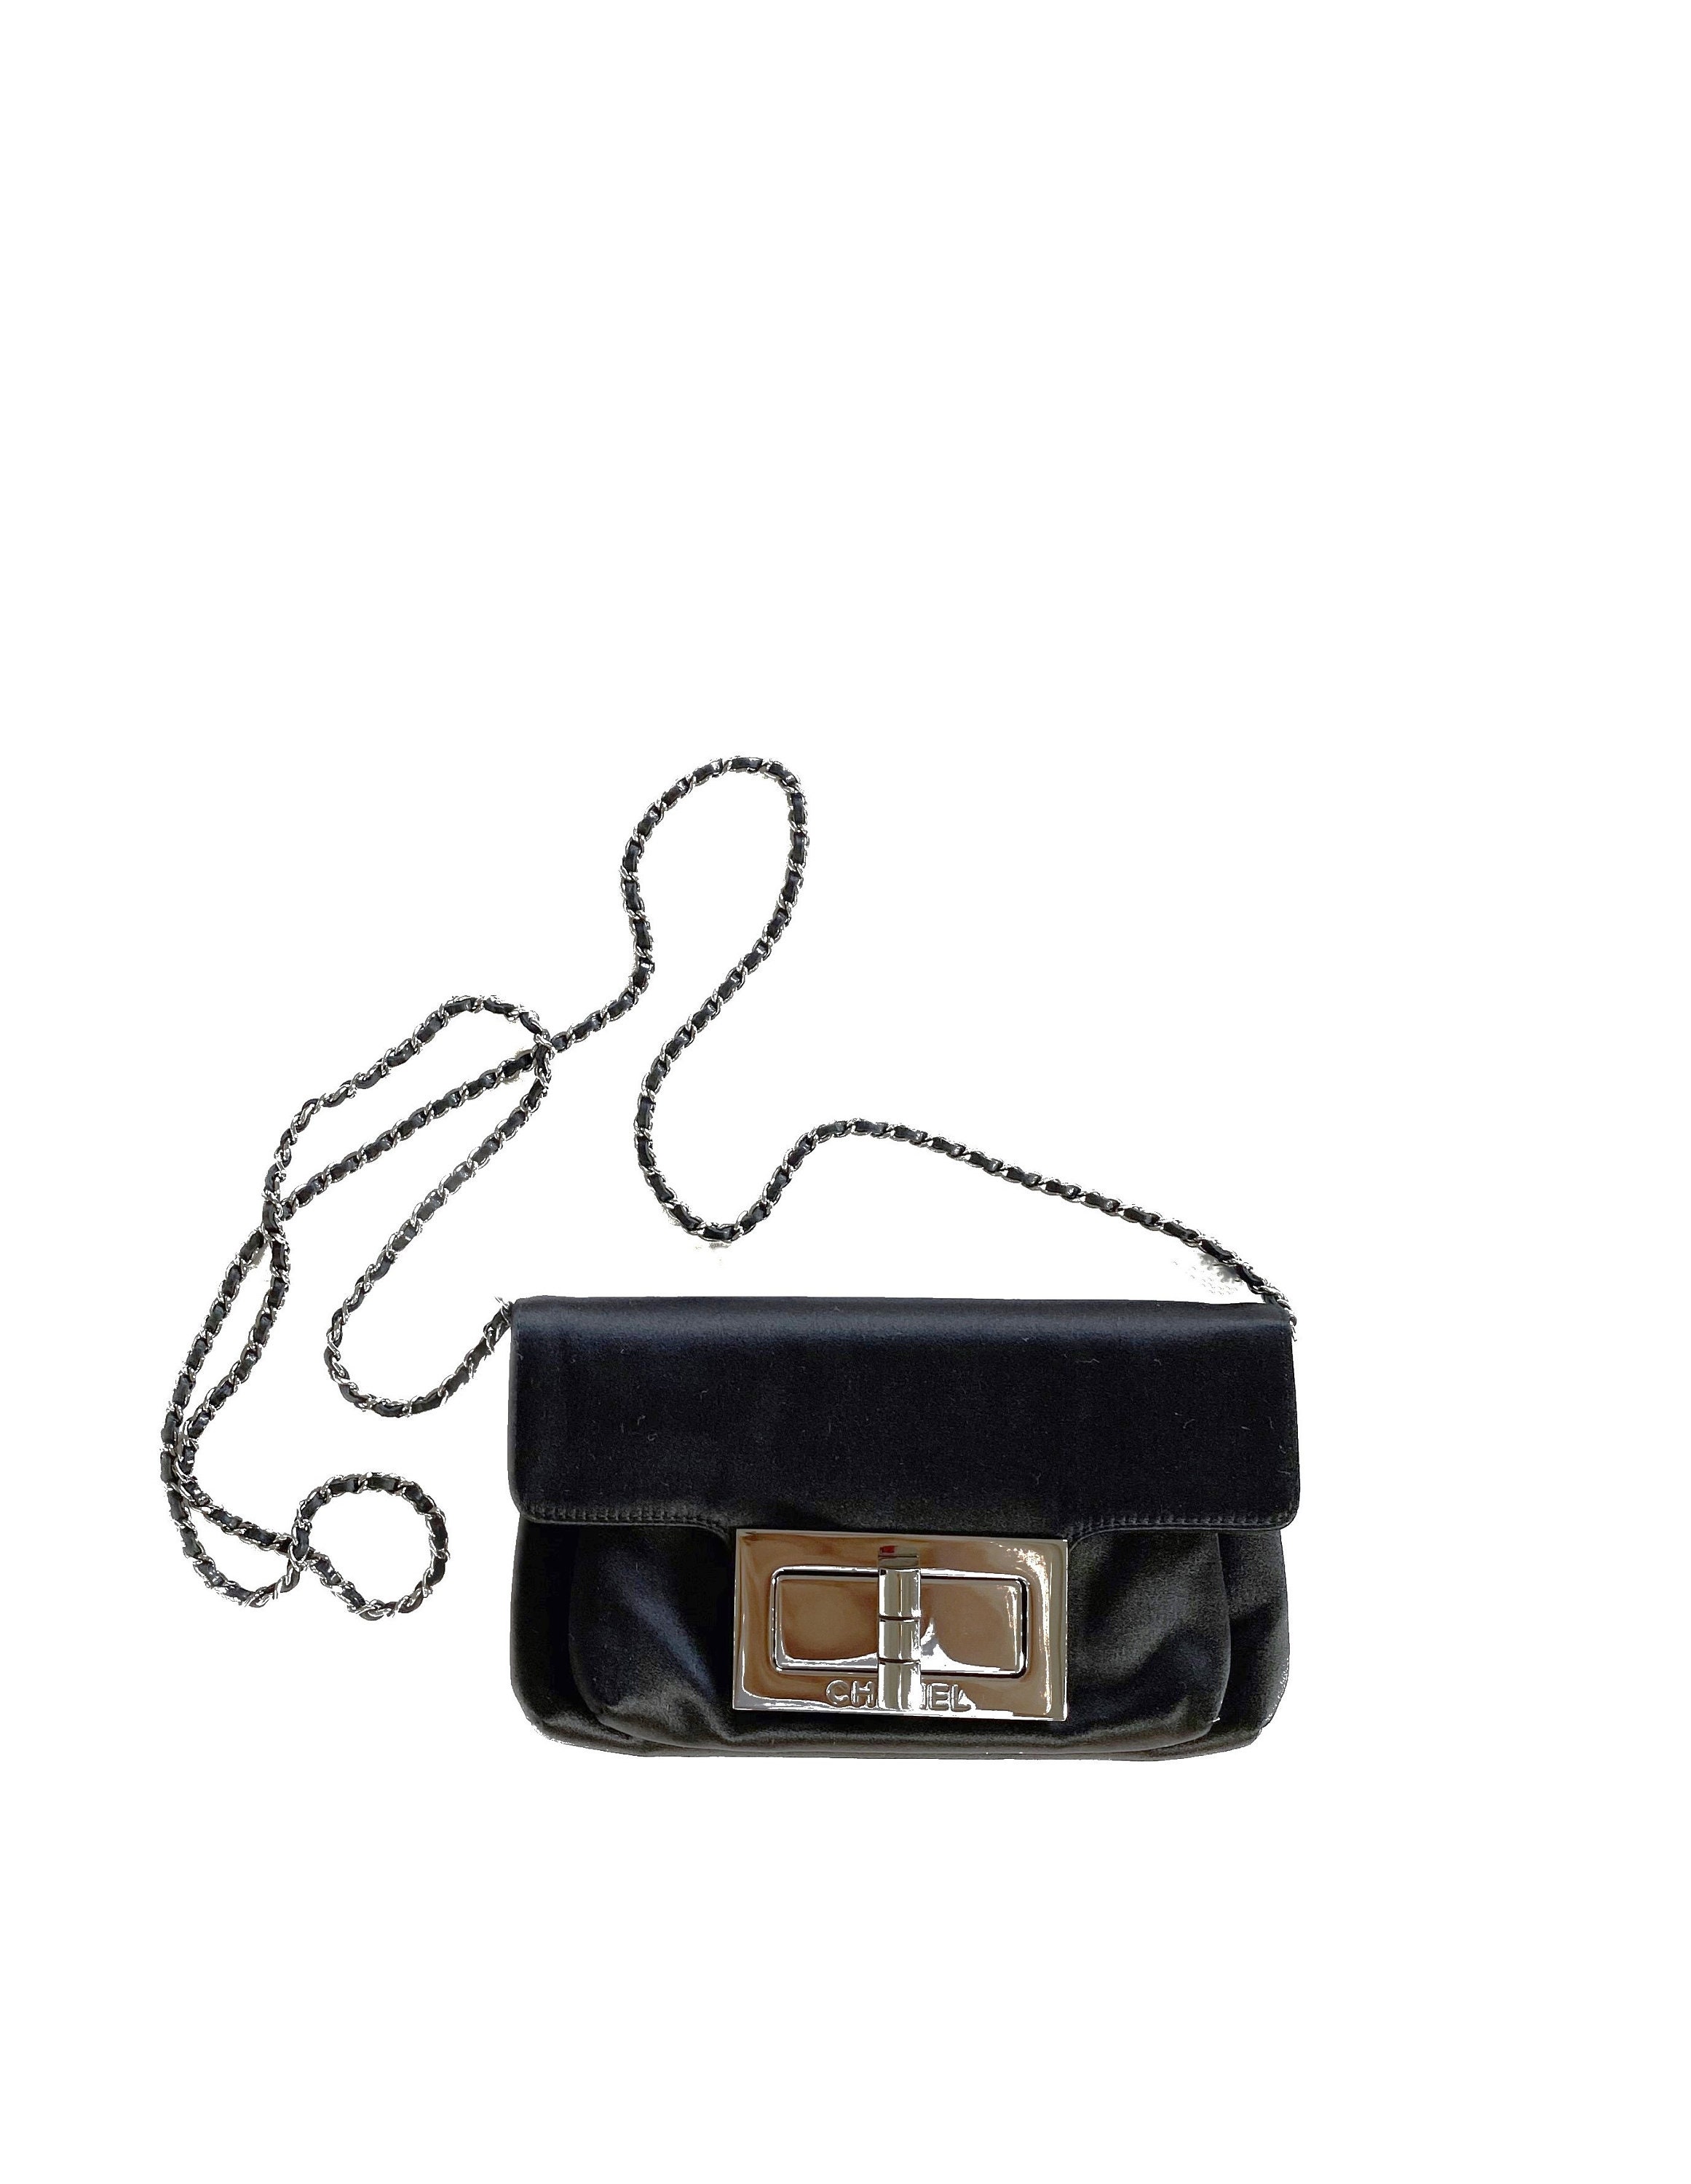 VTG Genuine CHANEL Black Velvet Box Pearl Tassel Small Evening Clutch Bag  Rare